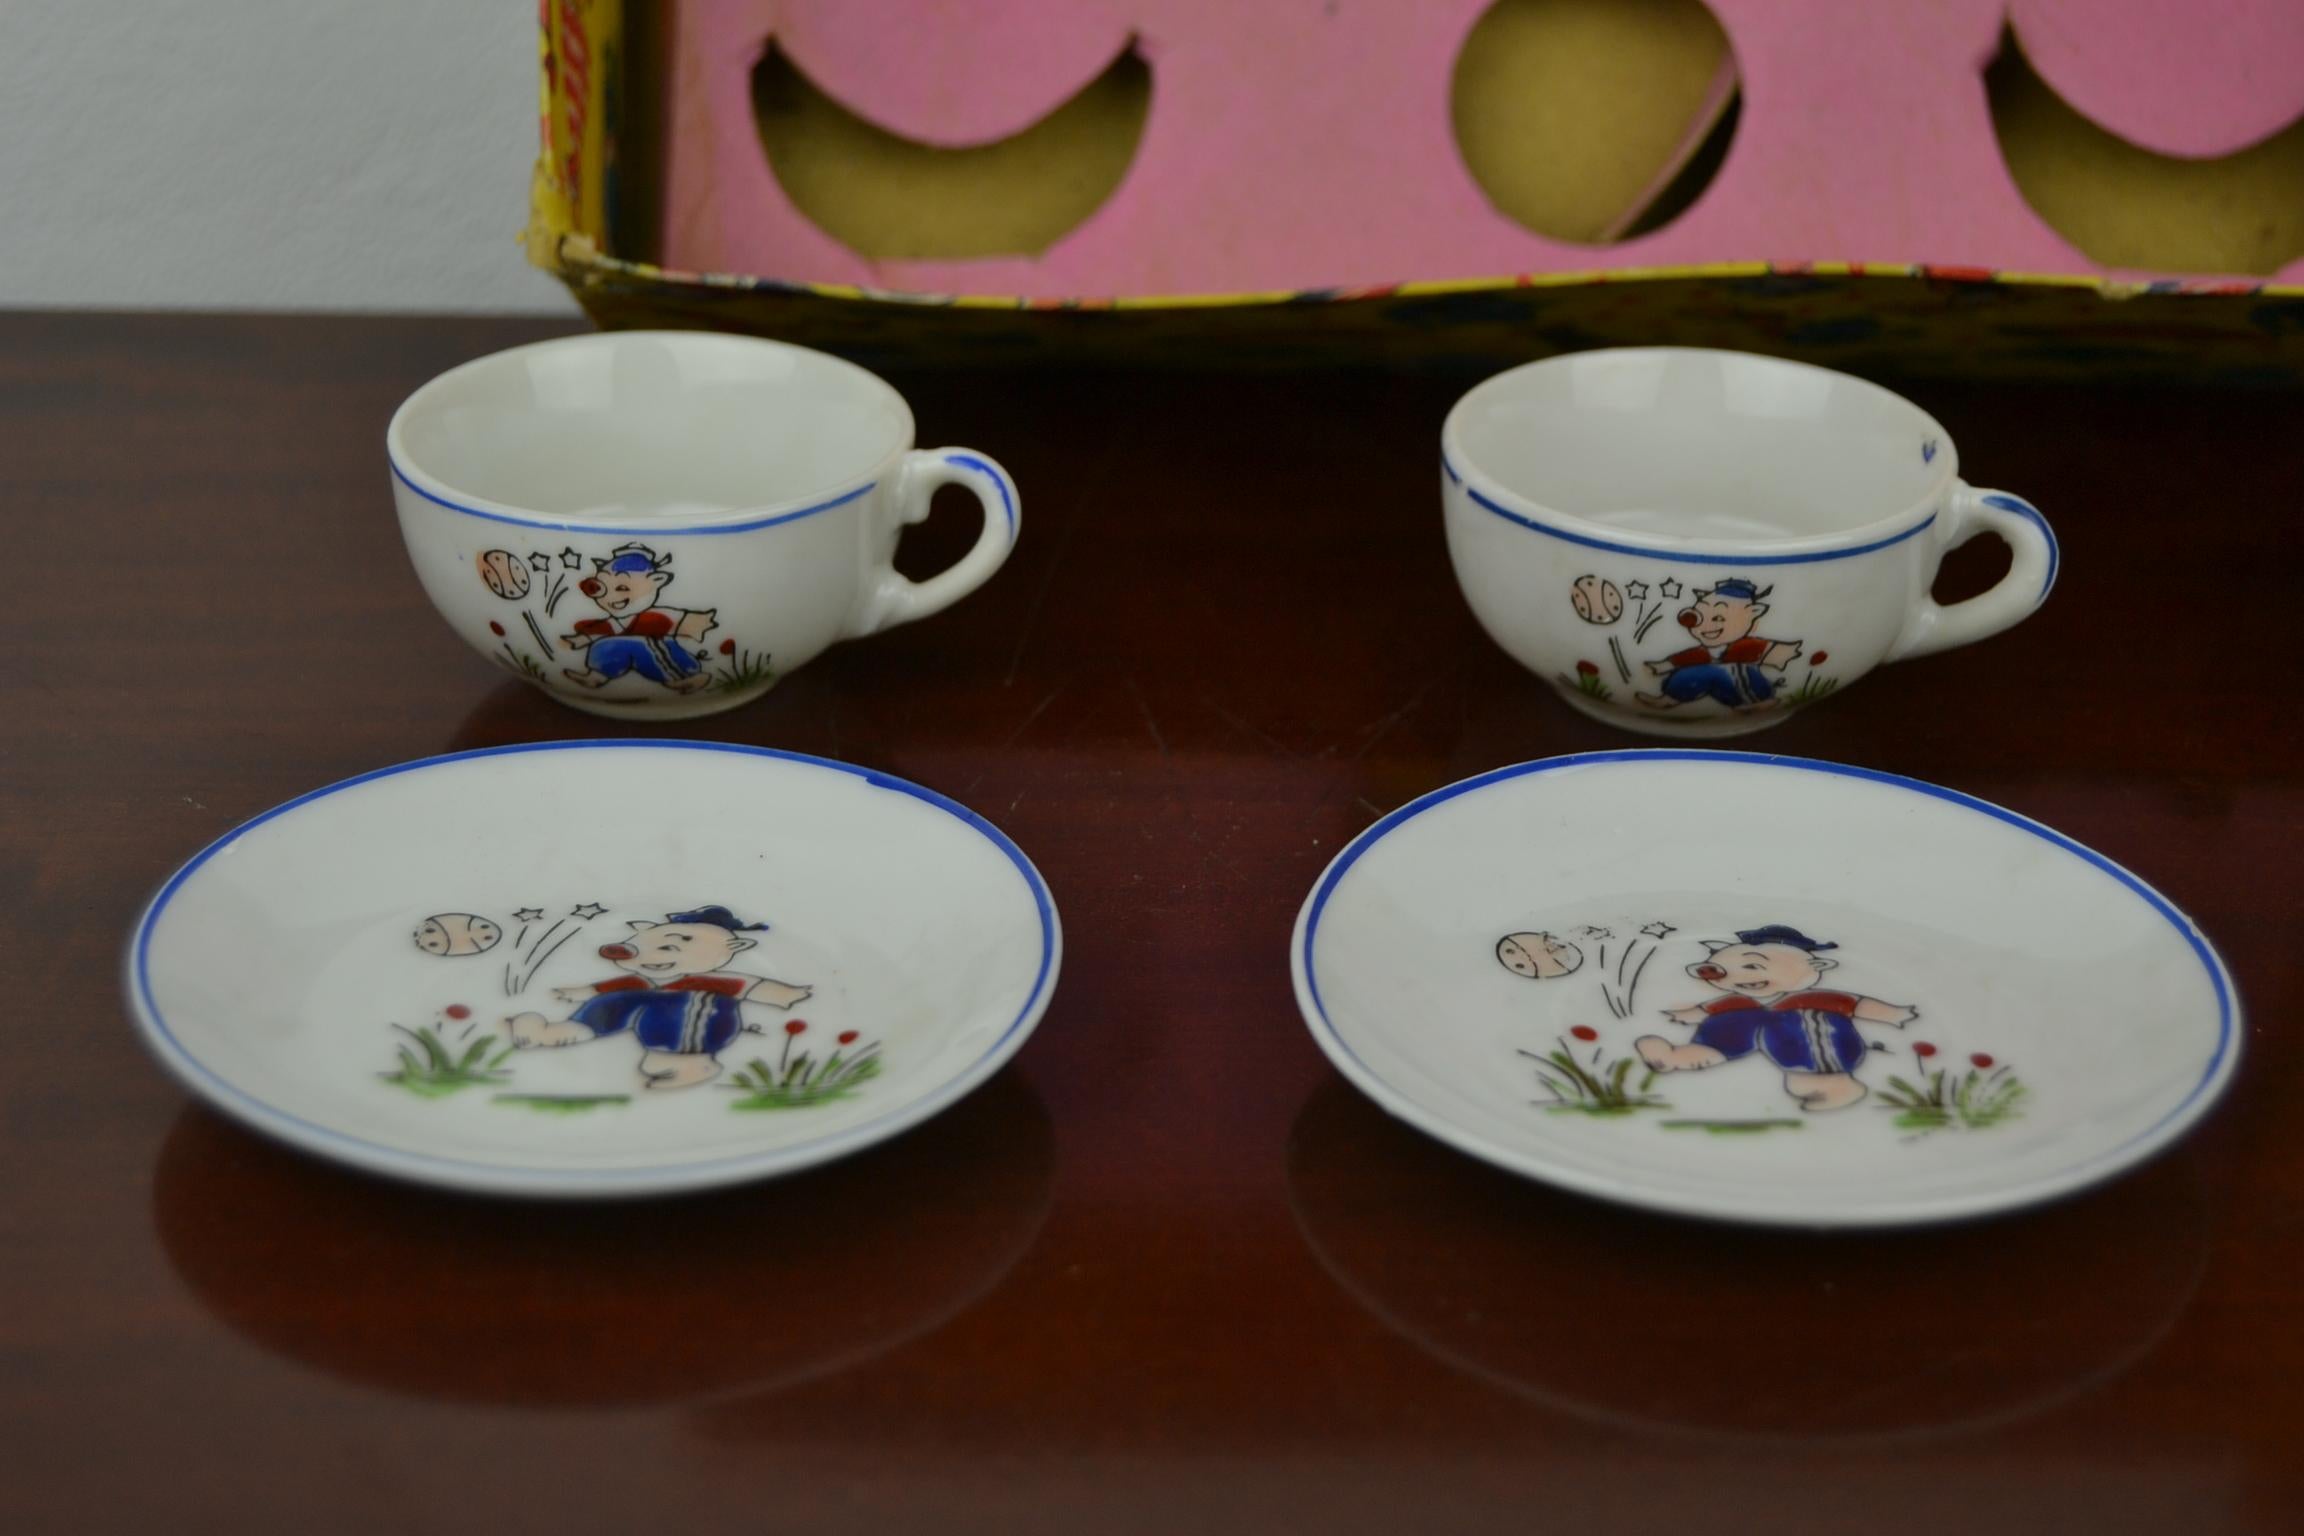 Porcelain Tea Set for Children, Pig Toy Tea Set, Foreign, Made in Japan 4